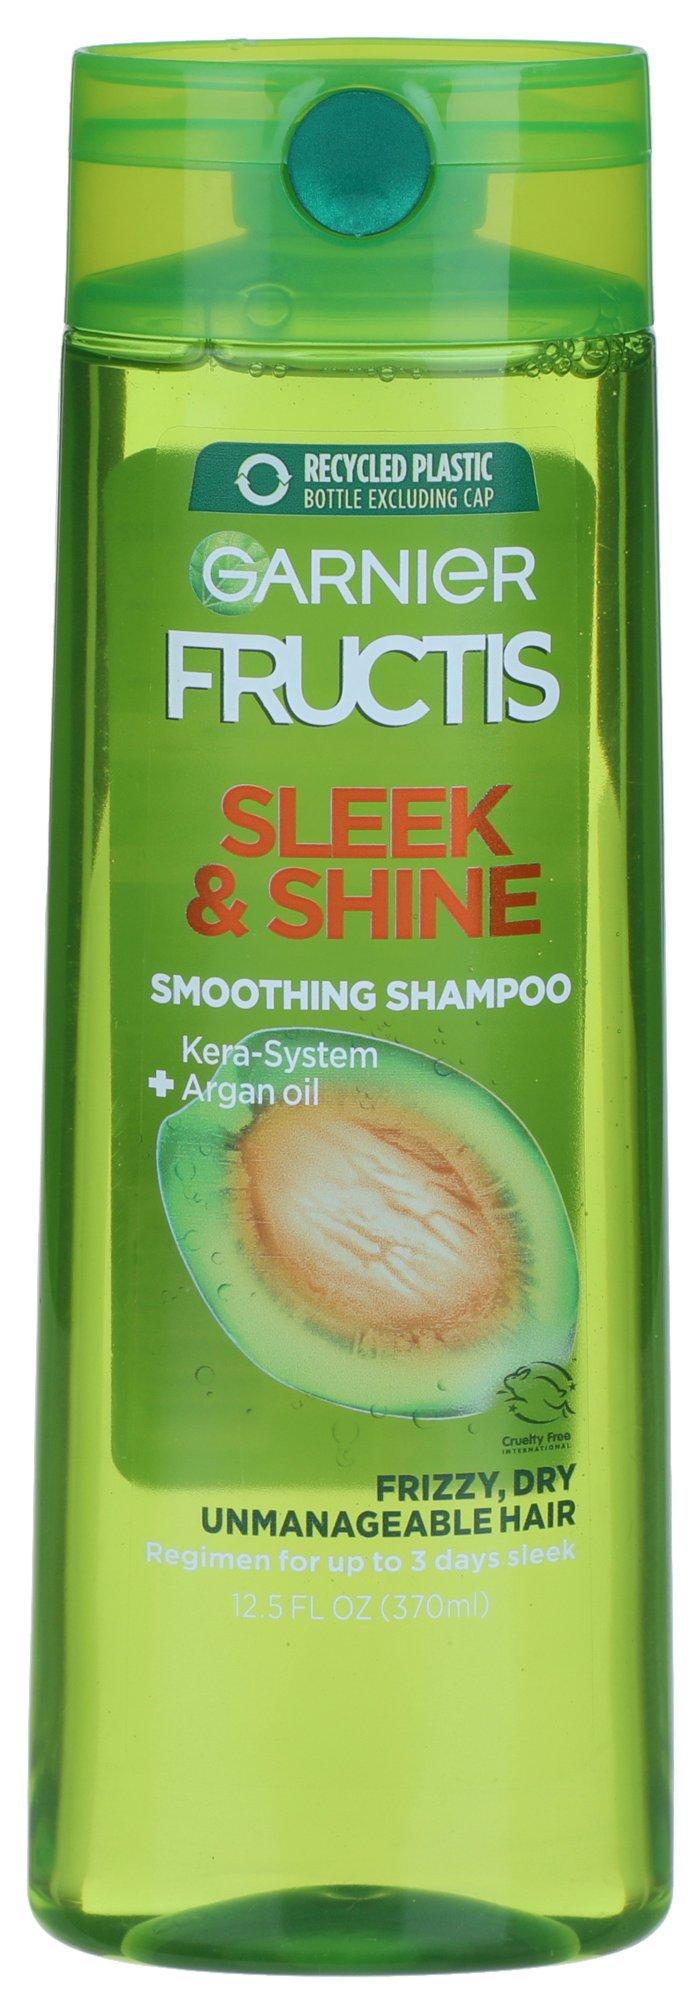 Sleek & Shine Vit E Smoothing Shampoo 12.5 Fl. Oz.